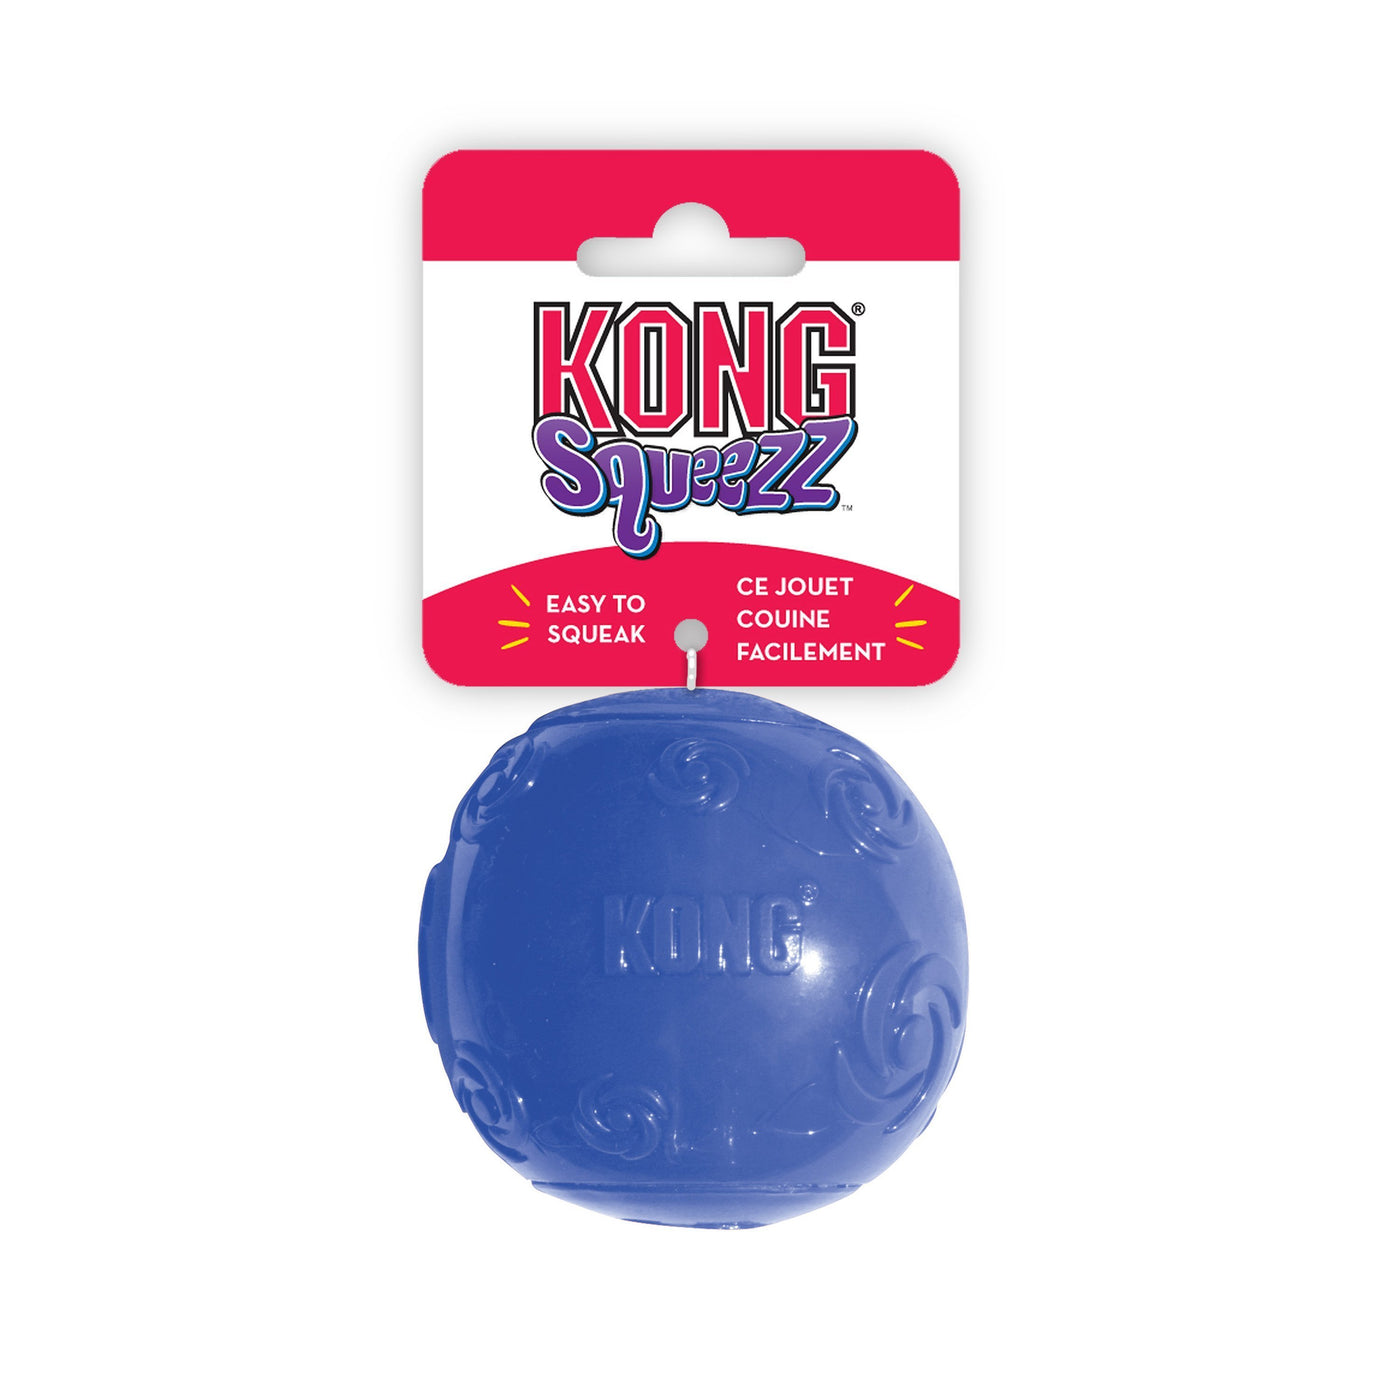 Kong company. Kong Squeezz Ball игрушка для собак. Kong Squeezz мячик для собак. Мячик для собак Kong Squeezz средний. Kong Squeezz Ball мяч средний.